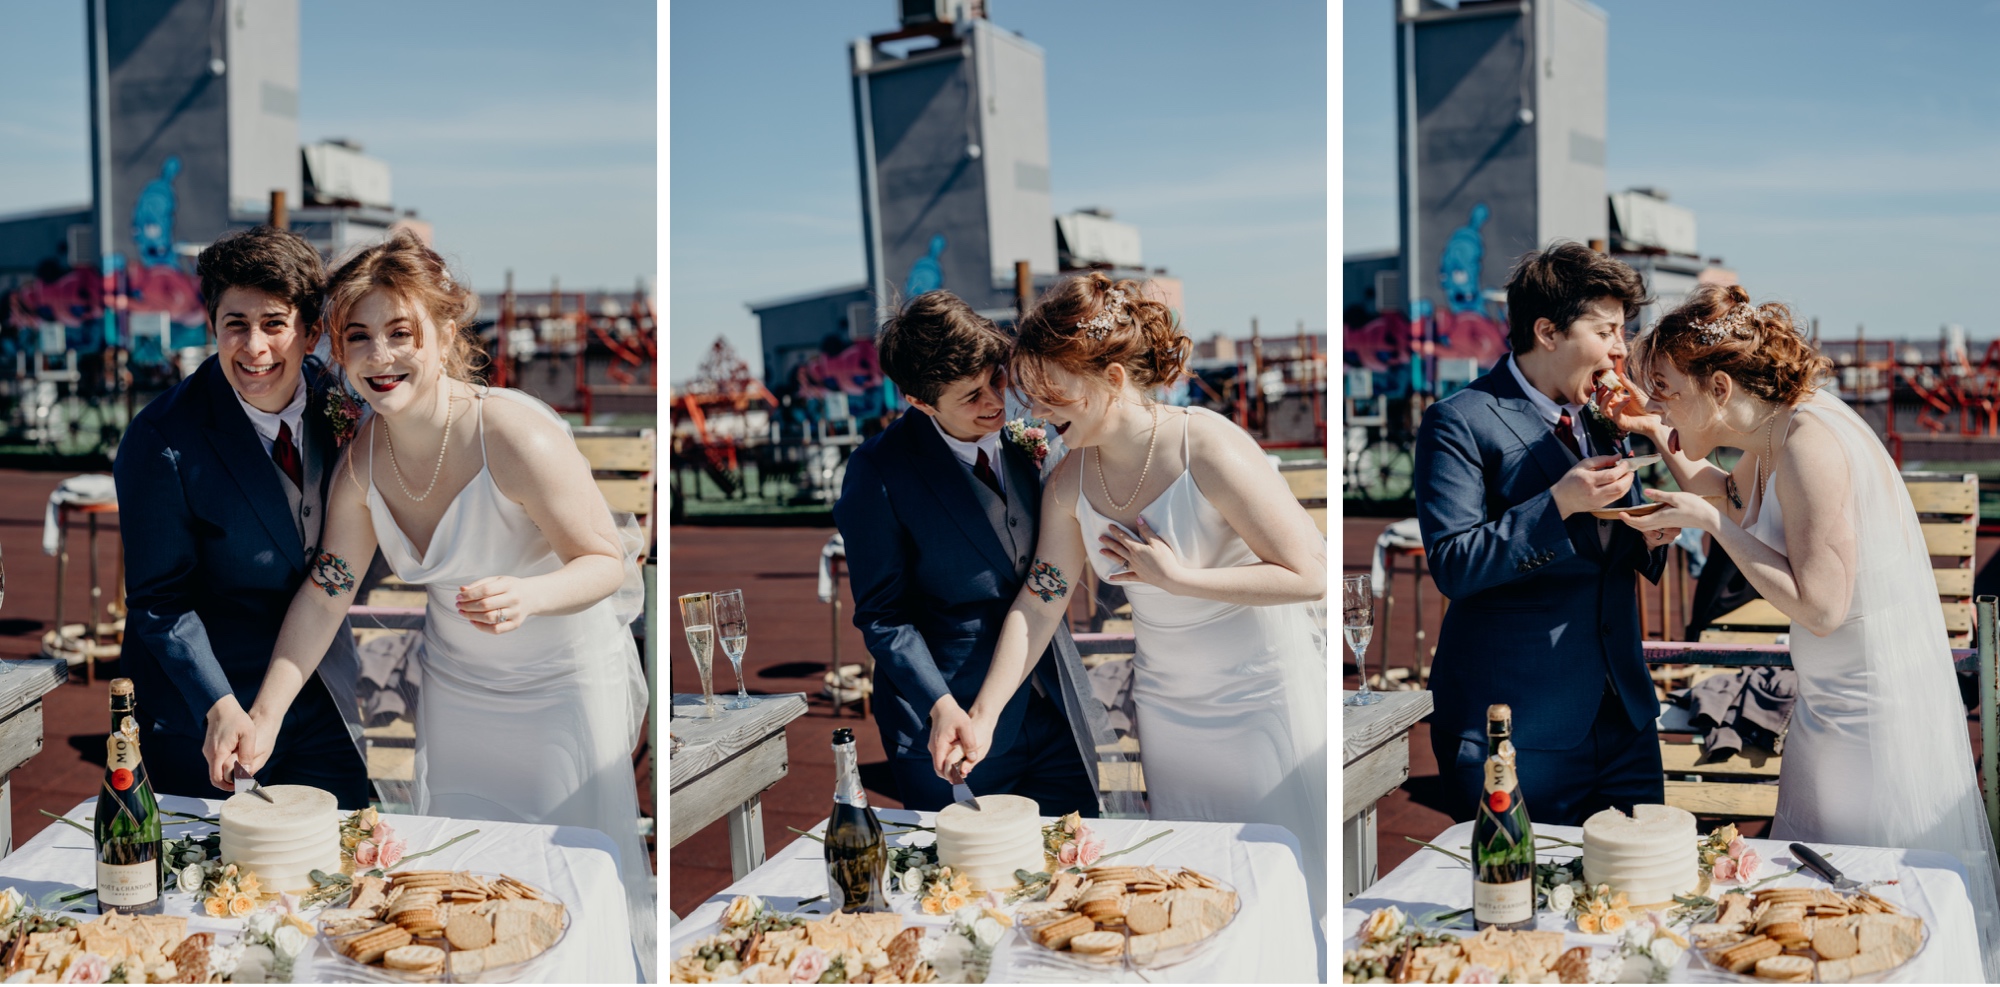 a couple cuts their wedding cake in bushwick, brooklyn, new york city